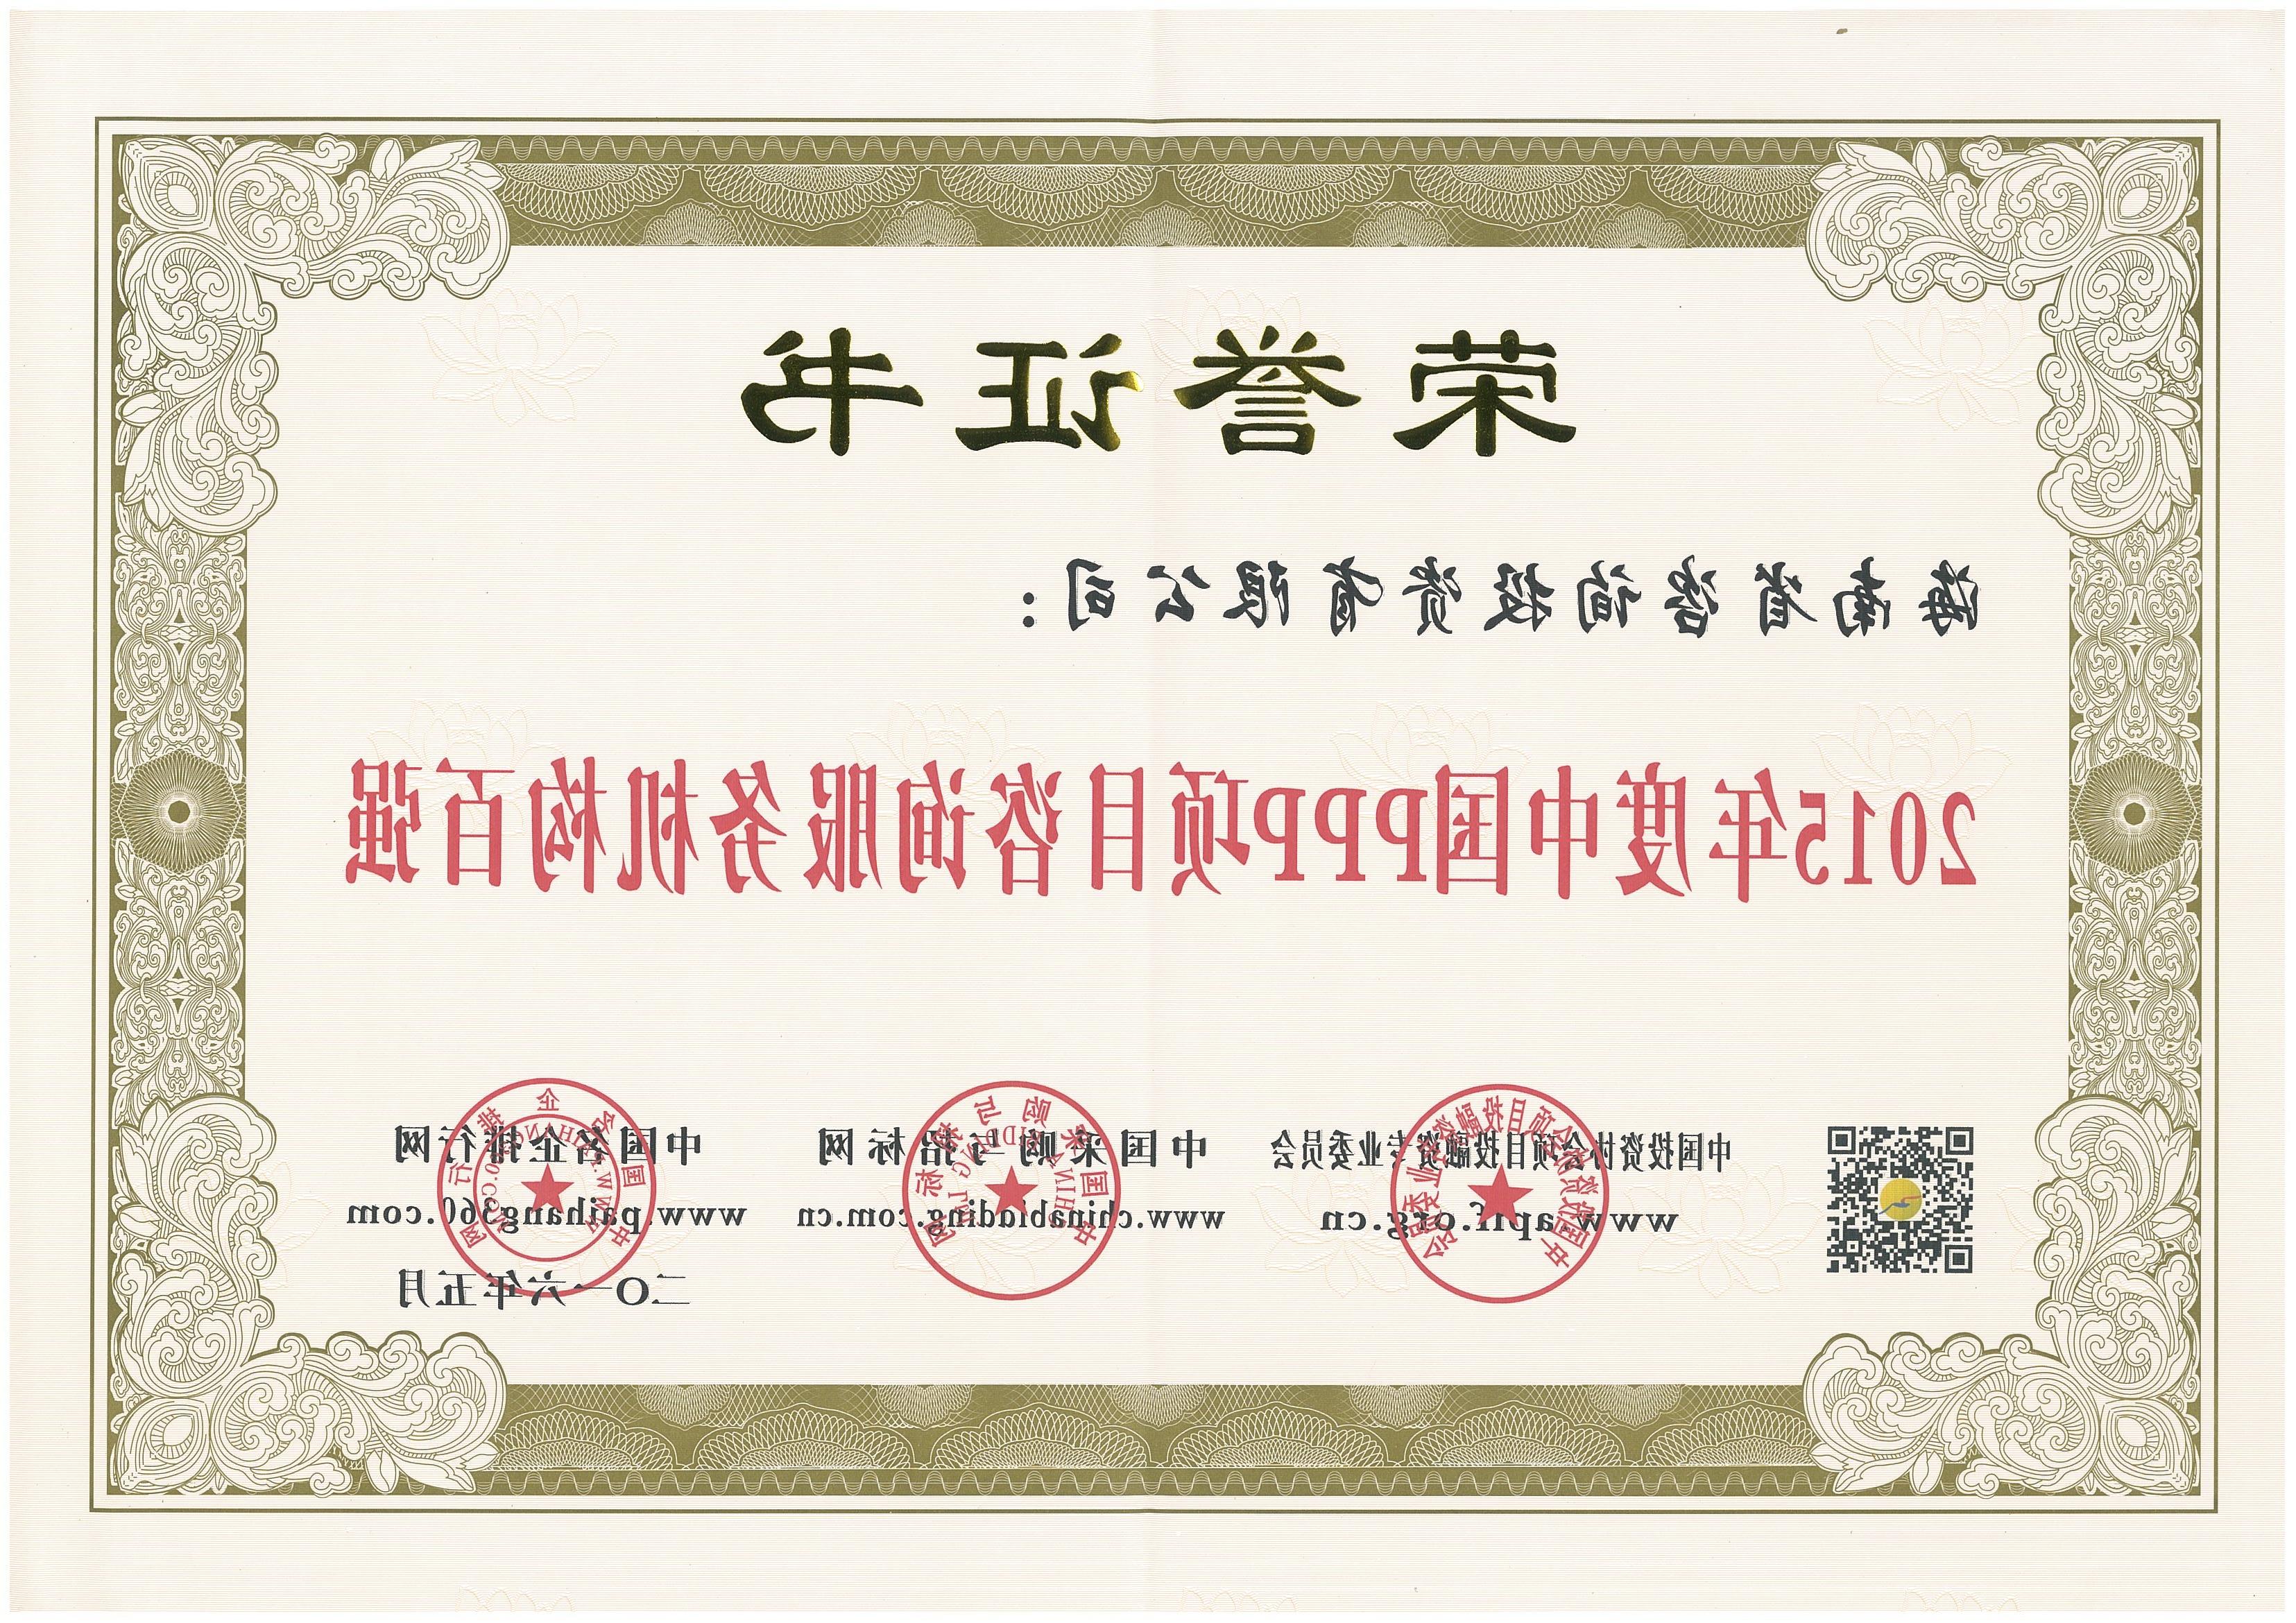 热烈祝贺我公司荣获“2015年度中国PPP咨询服务机构百强”荣誉